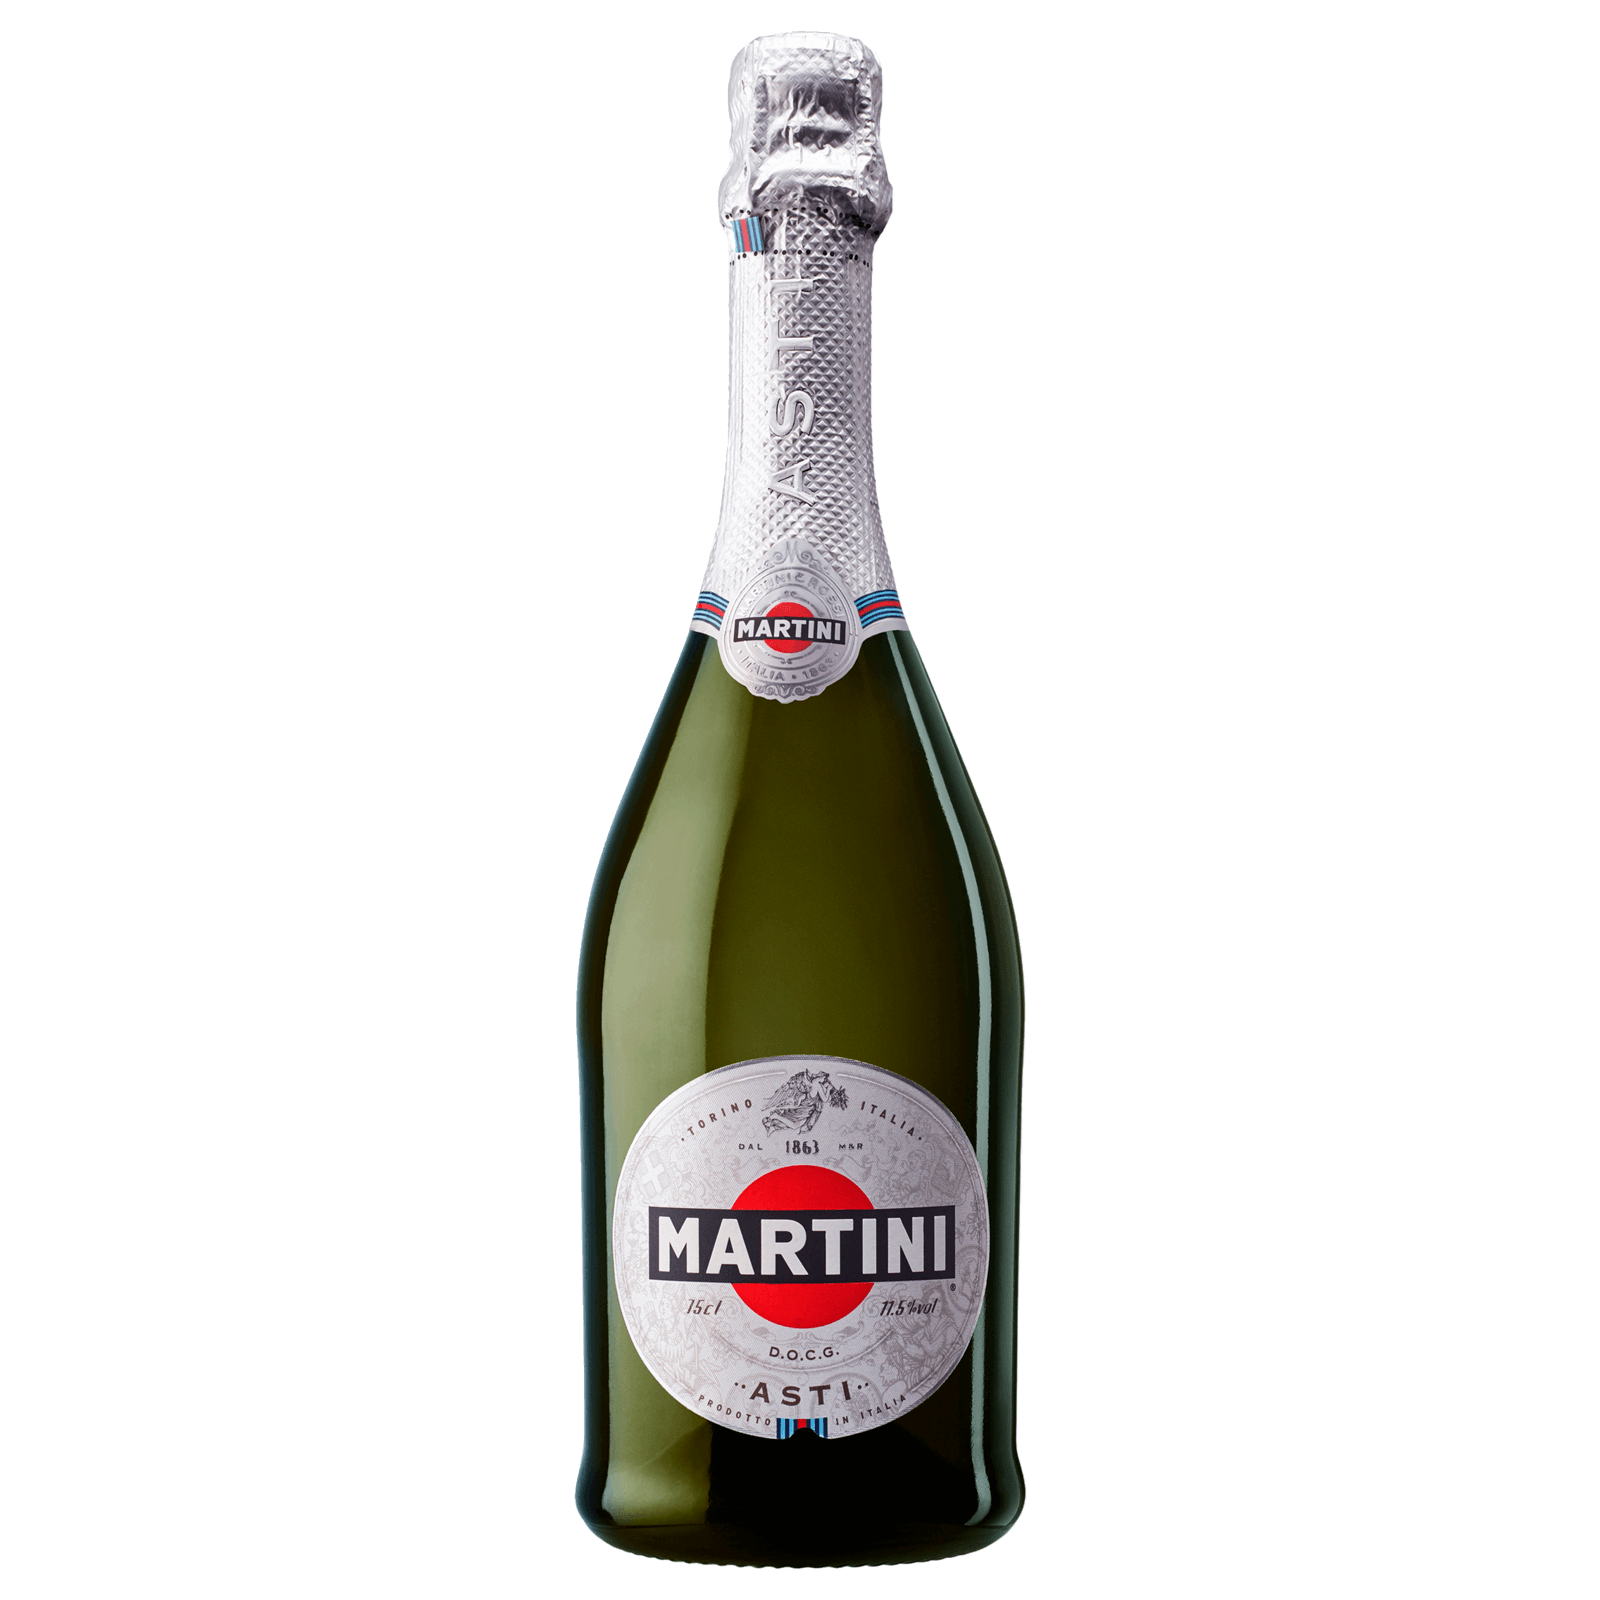 Martini Asti Spumante DOCG 0,75l bei REWE online bestellen!